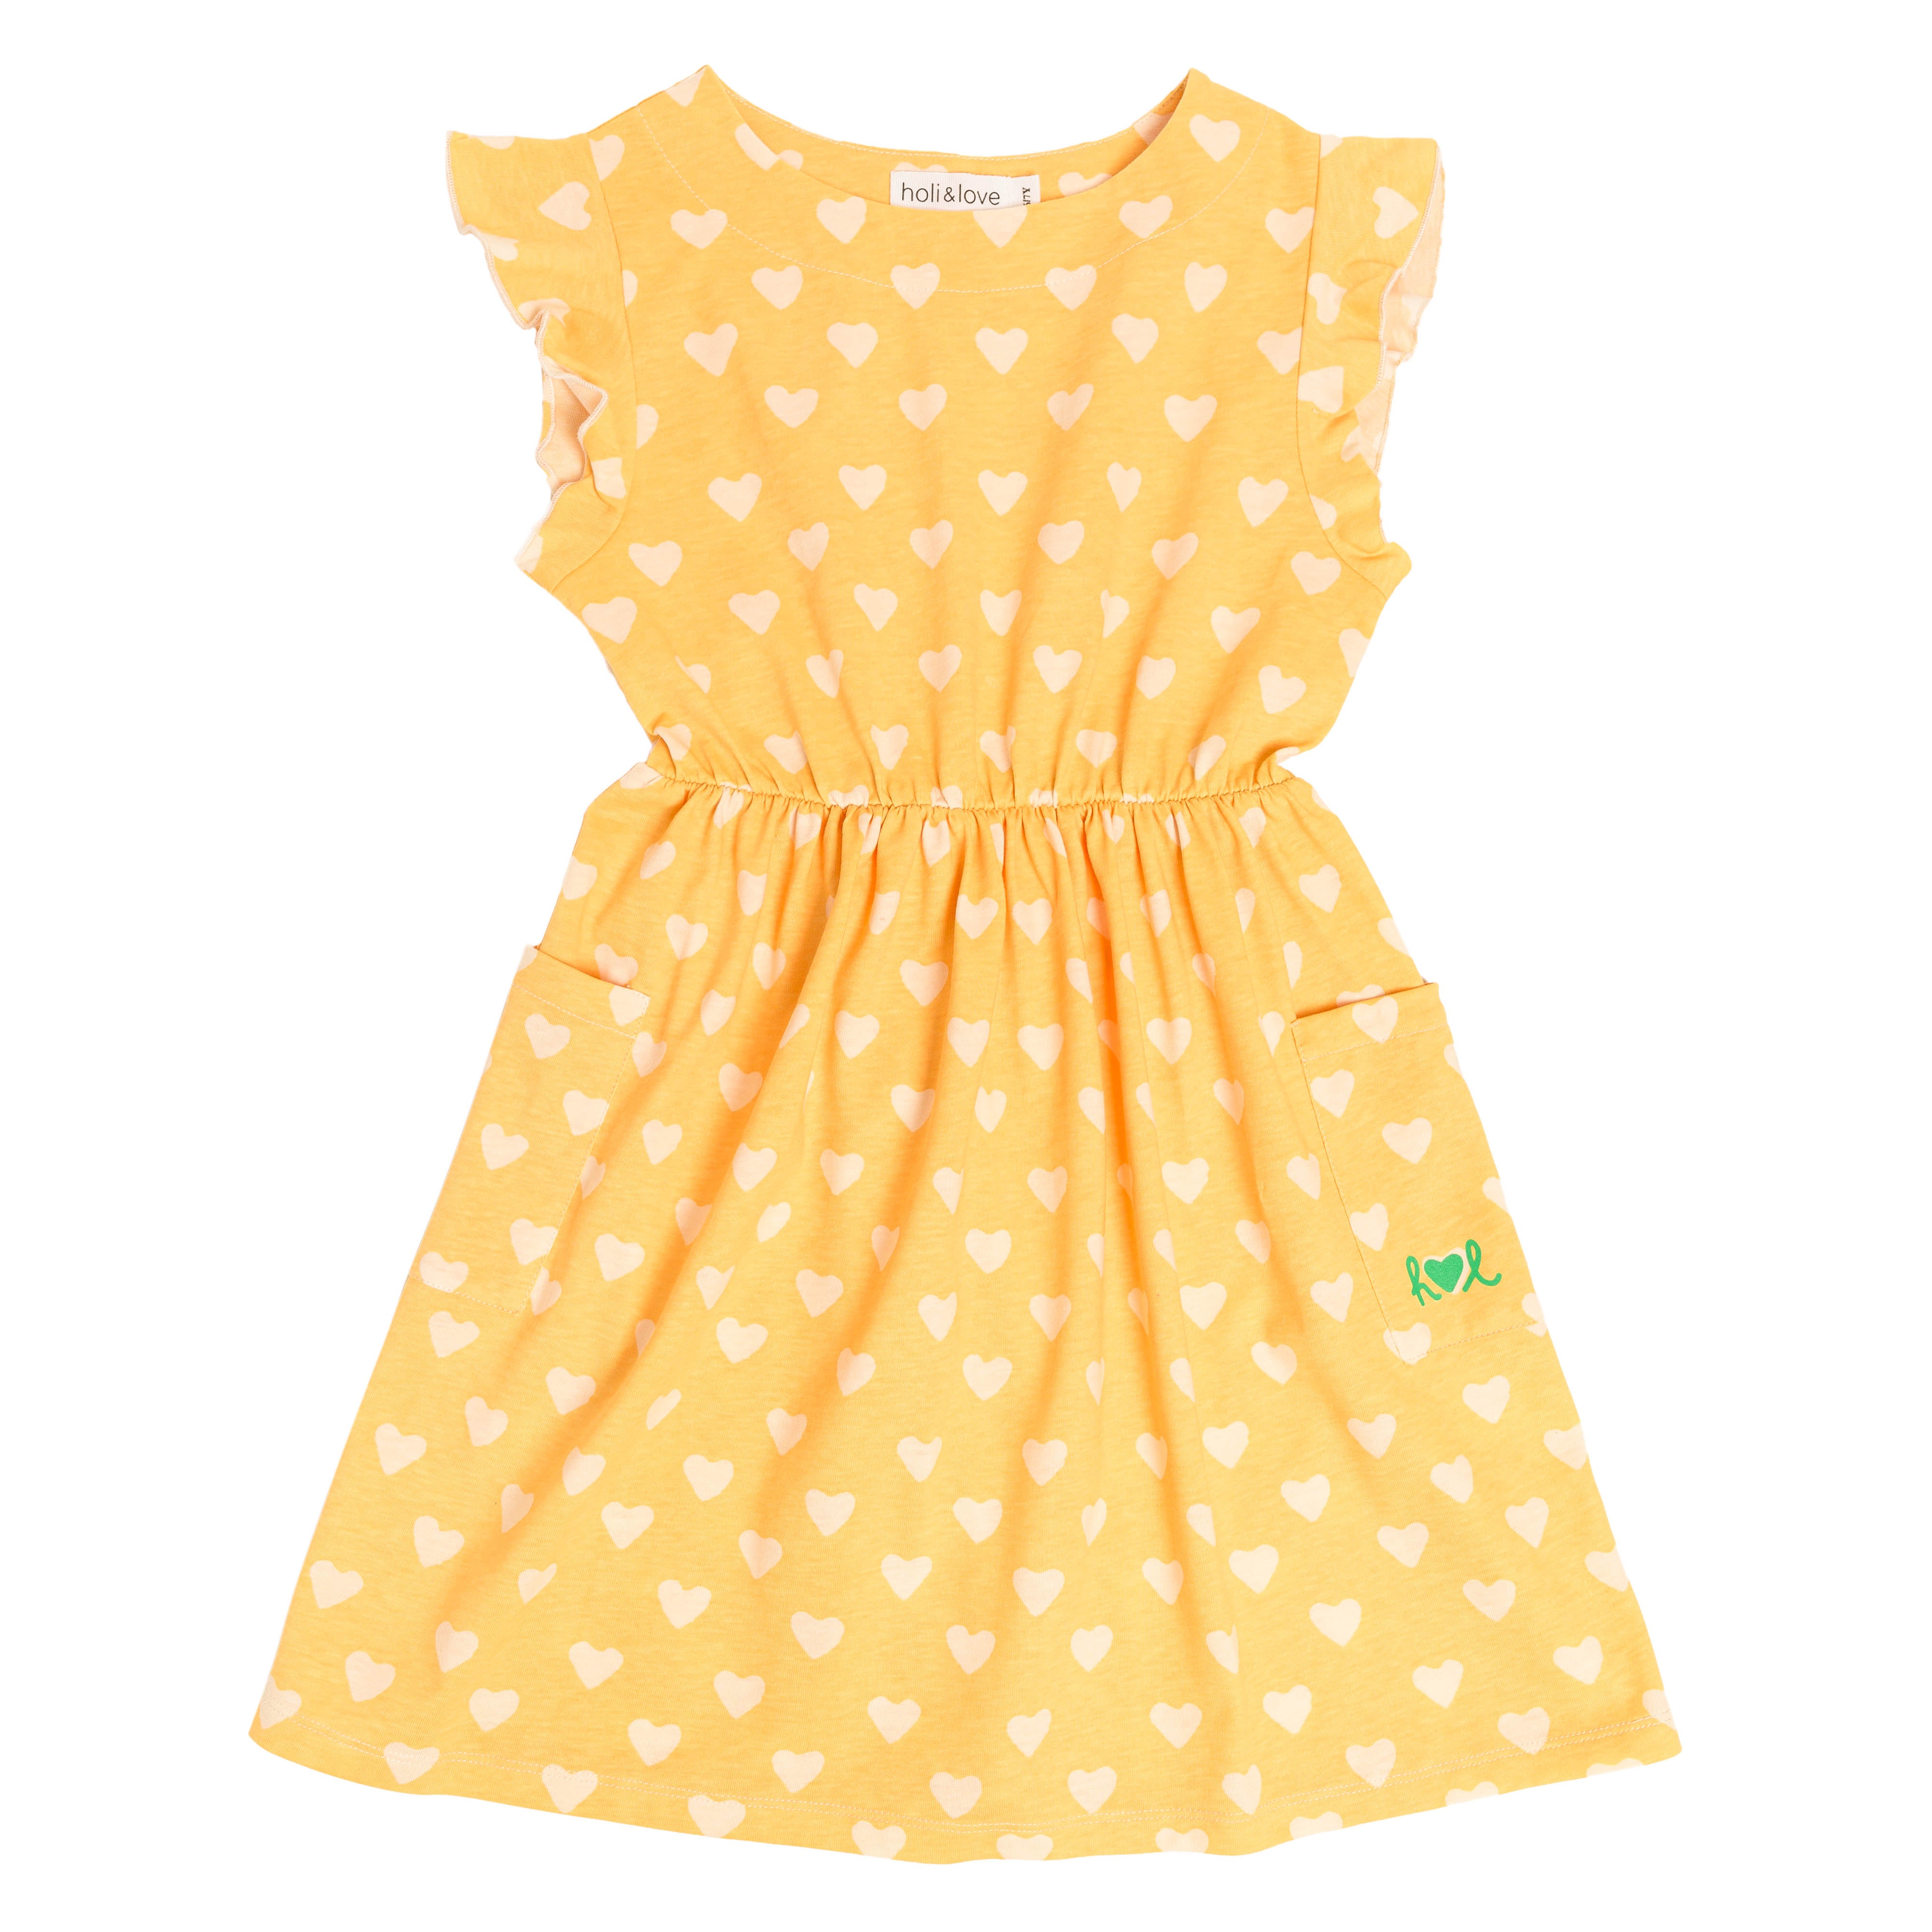 robe sans manches avec deux poches, vêtement mixte unisexe style vintage, imprimé jaune motif cœur, vue recto